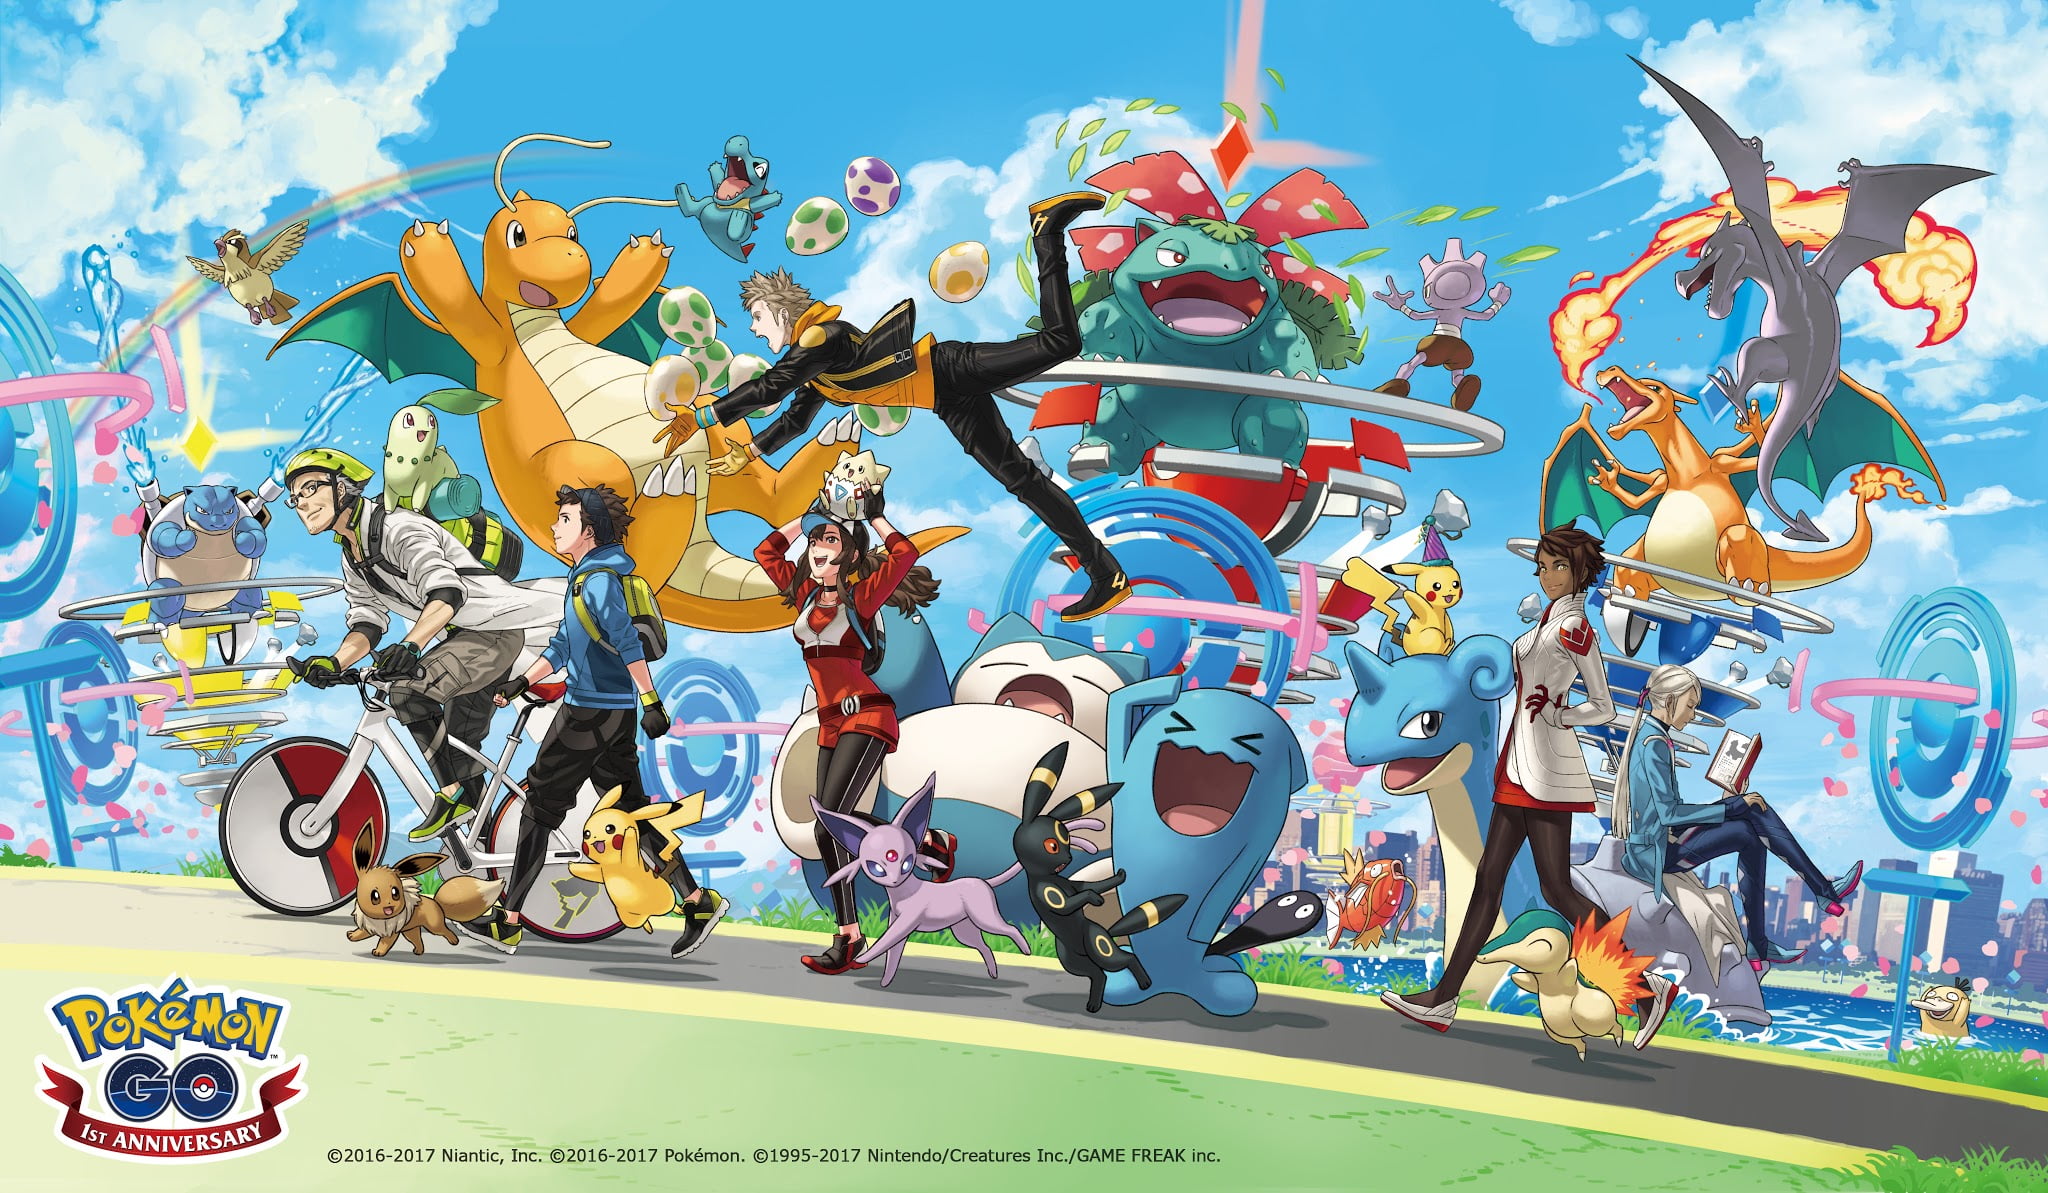 Pokémon GO recaudo $84.8 millones de dólares solo en septiembre